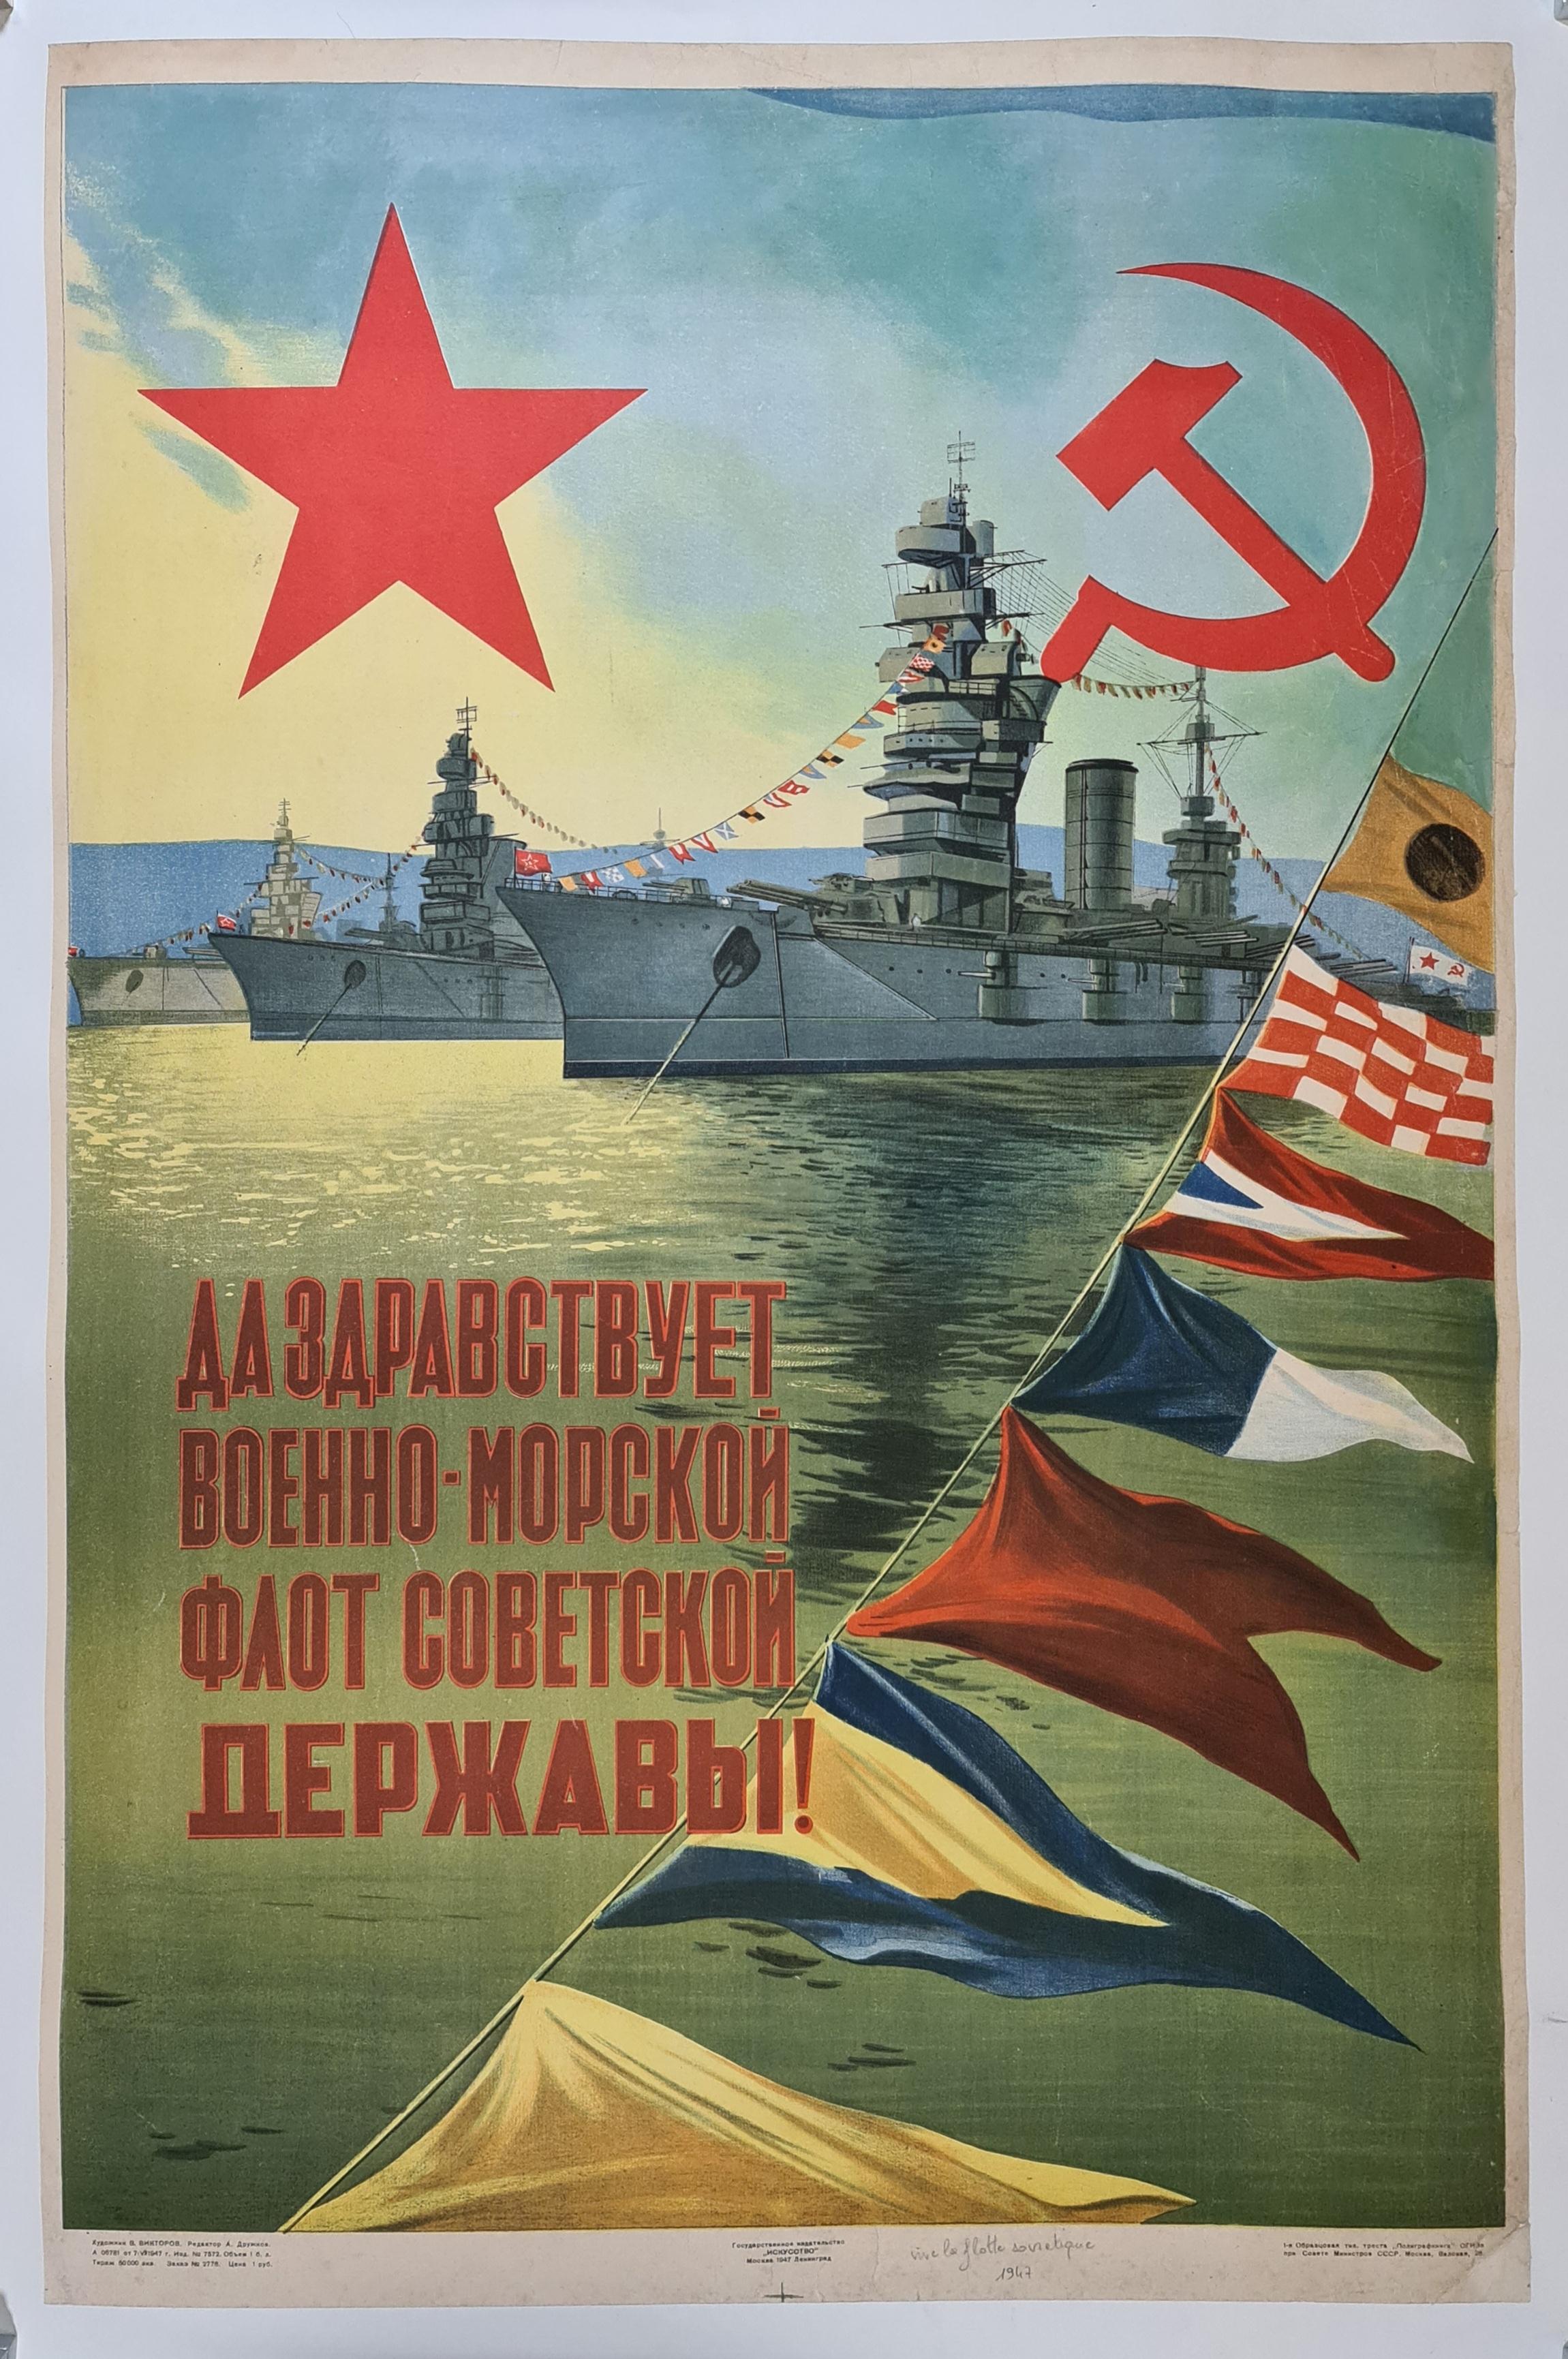 Une très belle affiche soviétique de 1947, représentant la grandeur de la flotte de la marine soviétique.

La marine soviétique (russe : Военно-морской флот СССР, Voyenno-morskoy flot SSSR, littéralement 